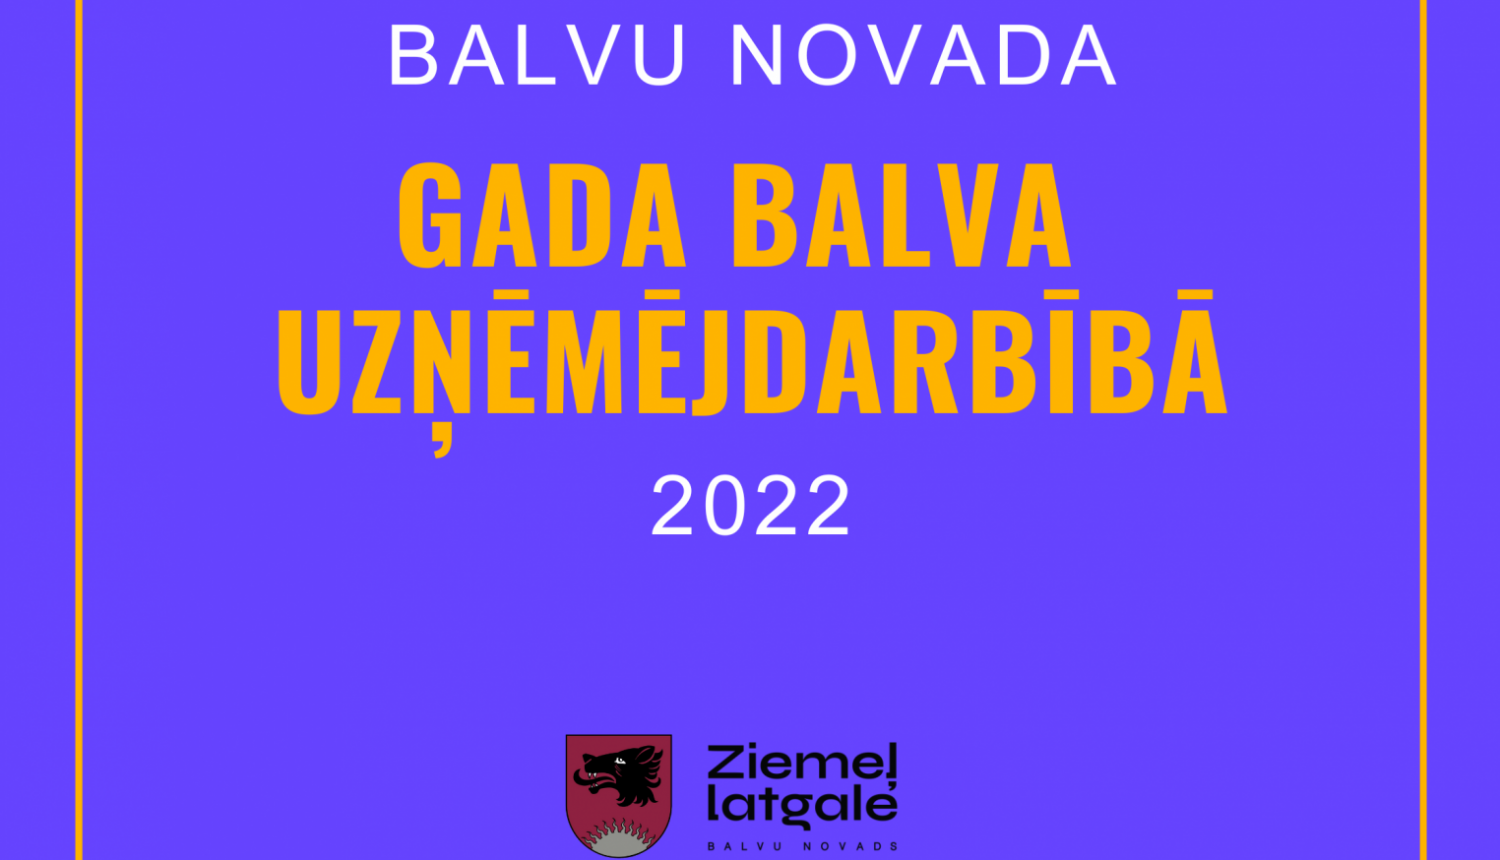 Noslēgusies pretendentu pieteikšana konkursam “Balvu novada gada balva uzņēmējdarbībā 2022”